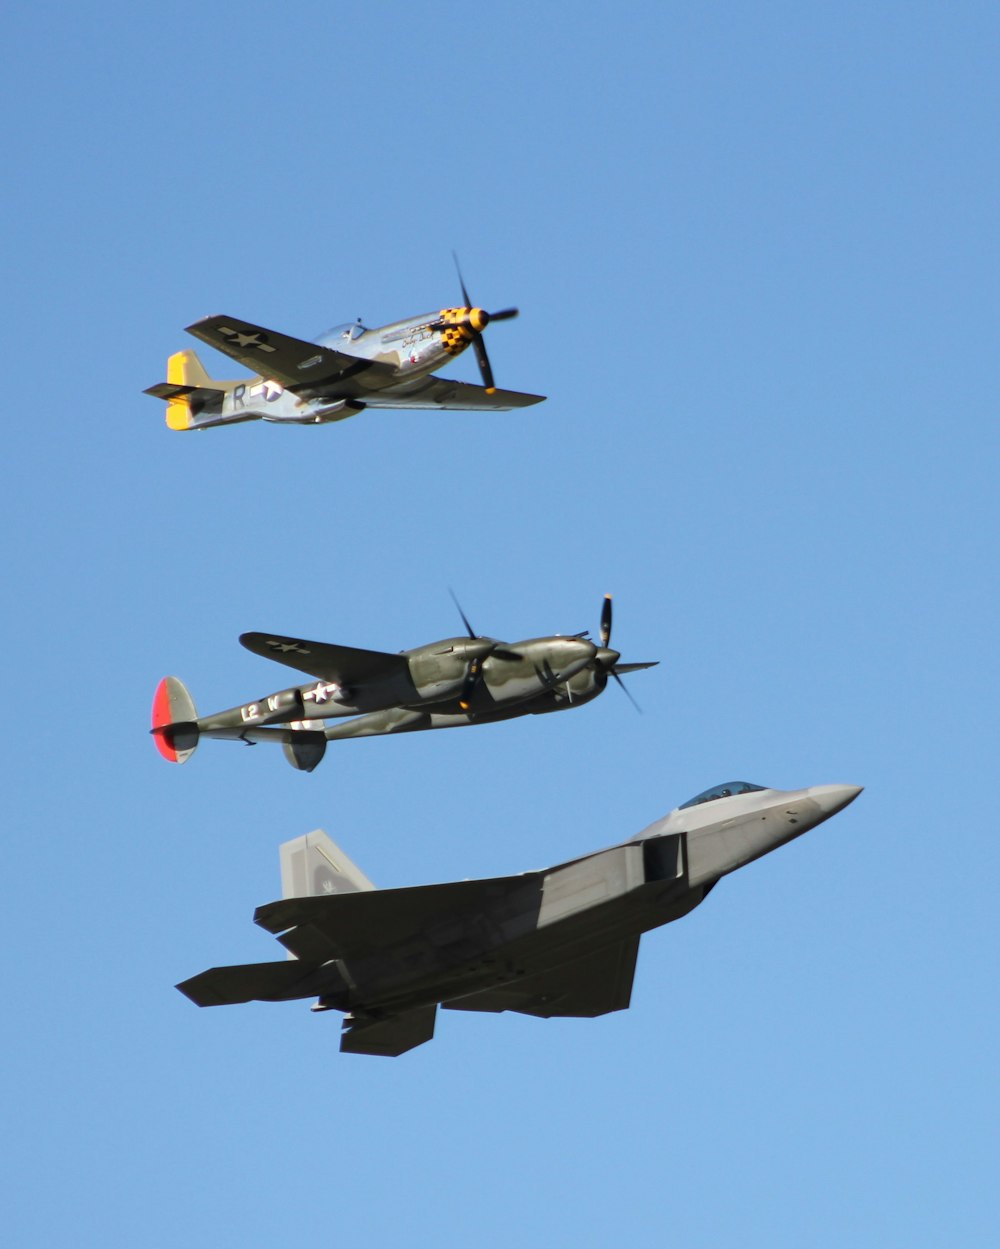 Drei Kampfjets in verschiedenen Farben